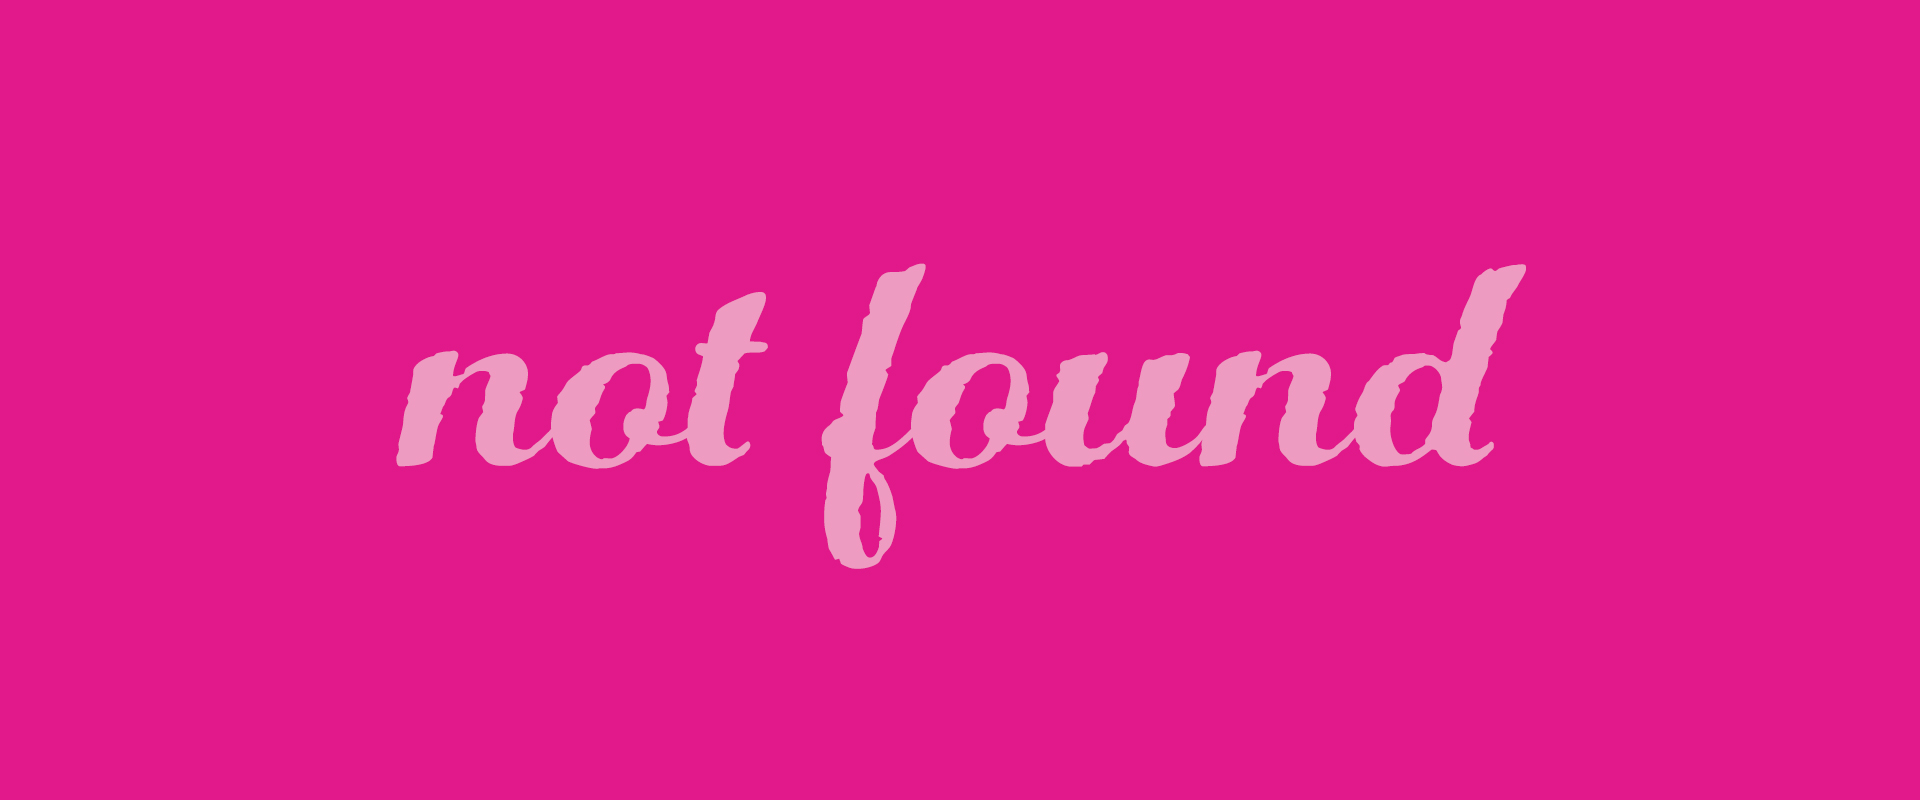 not-found